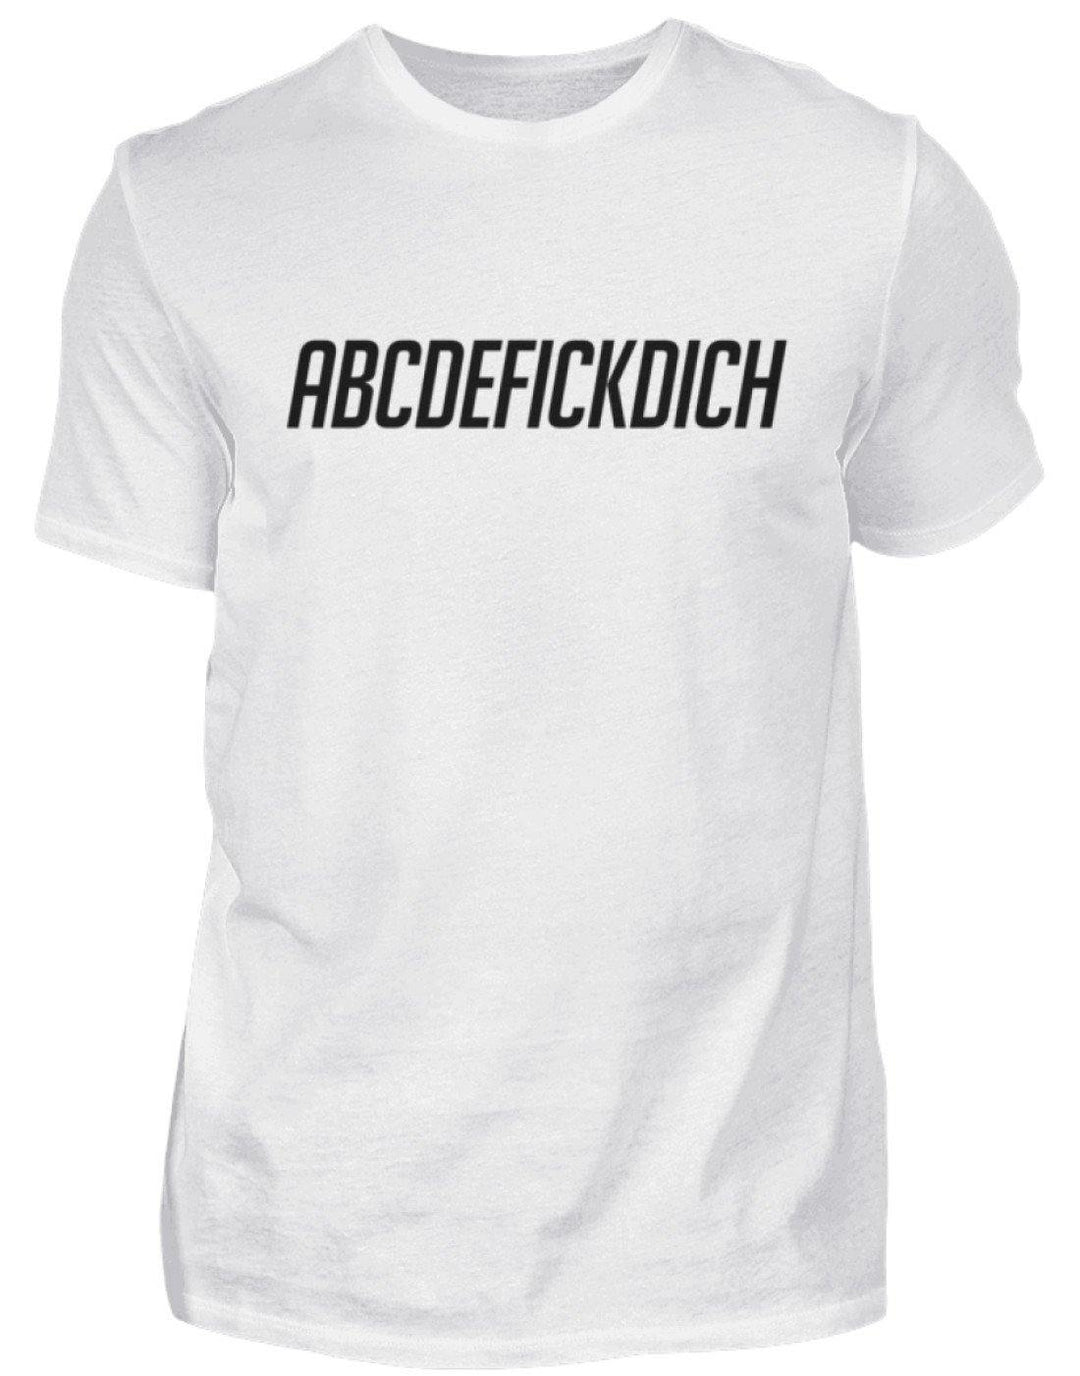 ABCDEF......... Words on Shirts  - Herren Shirt - Words on Shirts Sag es mit dem Mittelfinger Shirts Hoodies Sweatshirt Taschen Gymsack Spruch Sprüche Statement